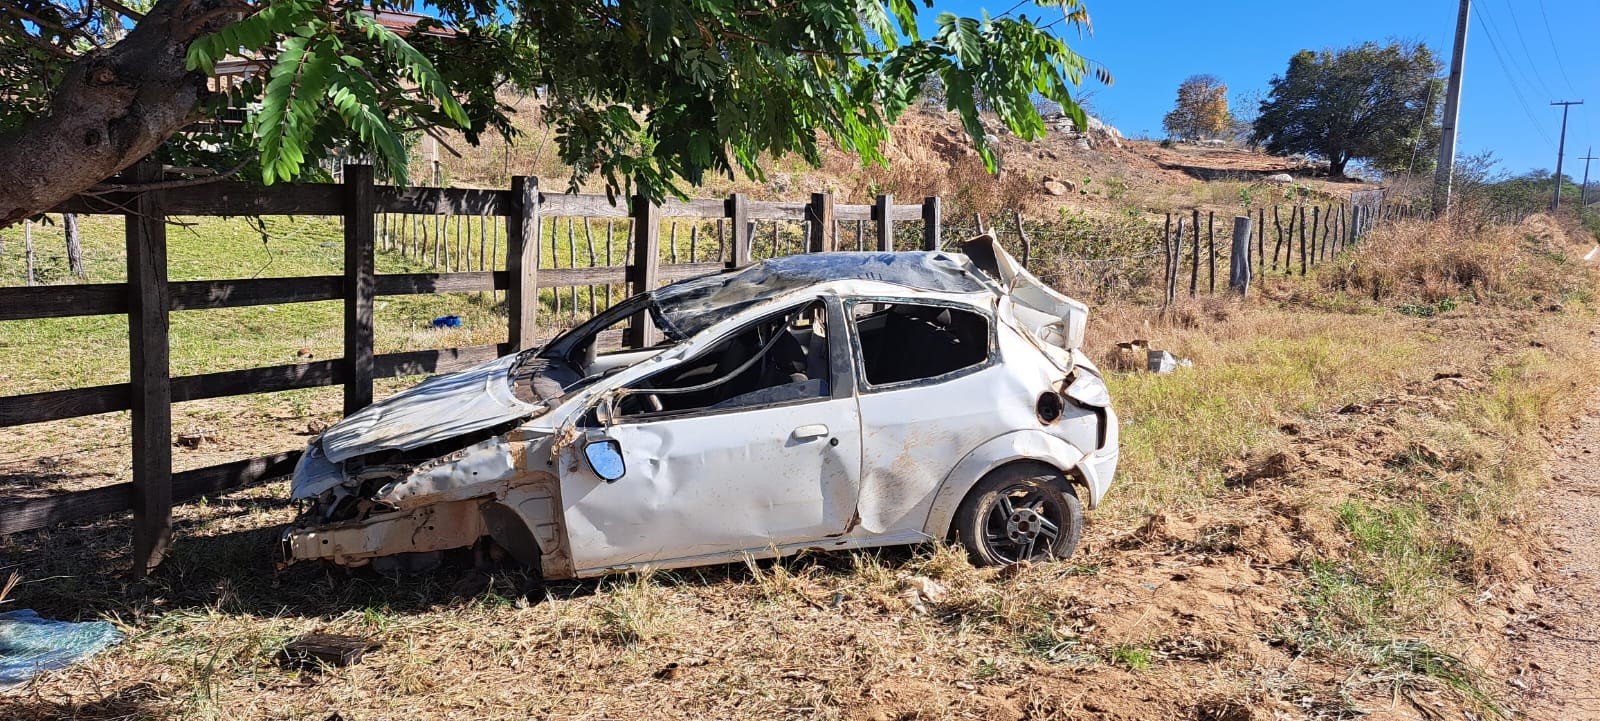 Motorista sem habilitação e embriagado provoca acidente, e nove pessoas ficam feridas no Sertão da Paraíba